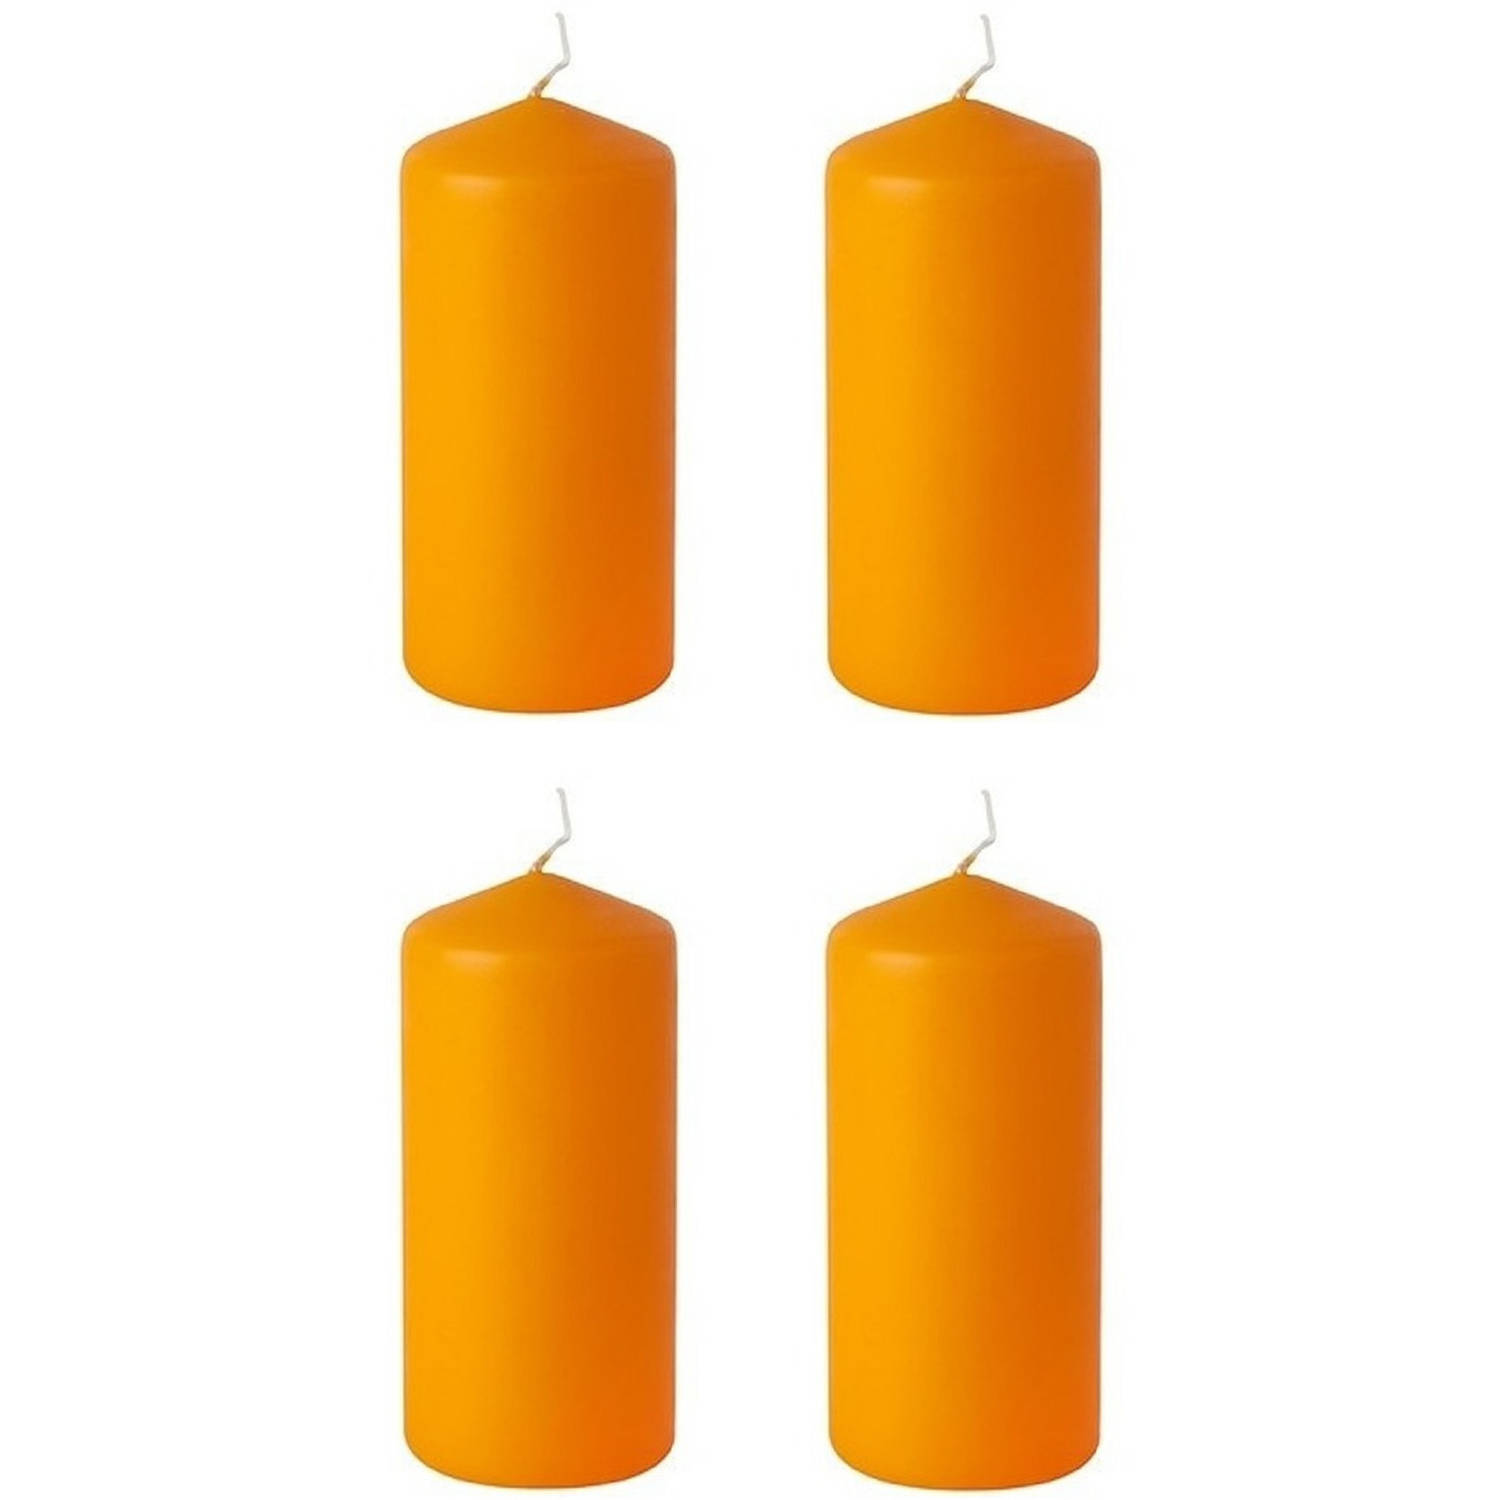 Herenhuis sensor Eigenwijs 4x stuks stompkaarsen oranje 15 cm - Stompkaarsen | Blokker